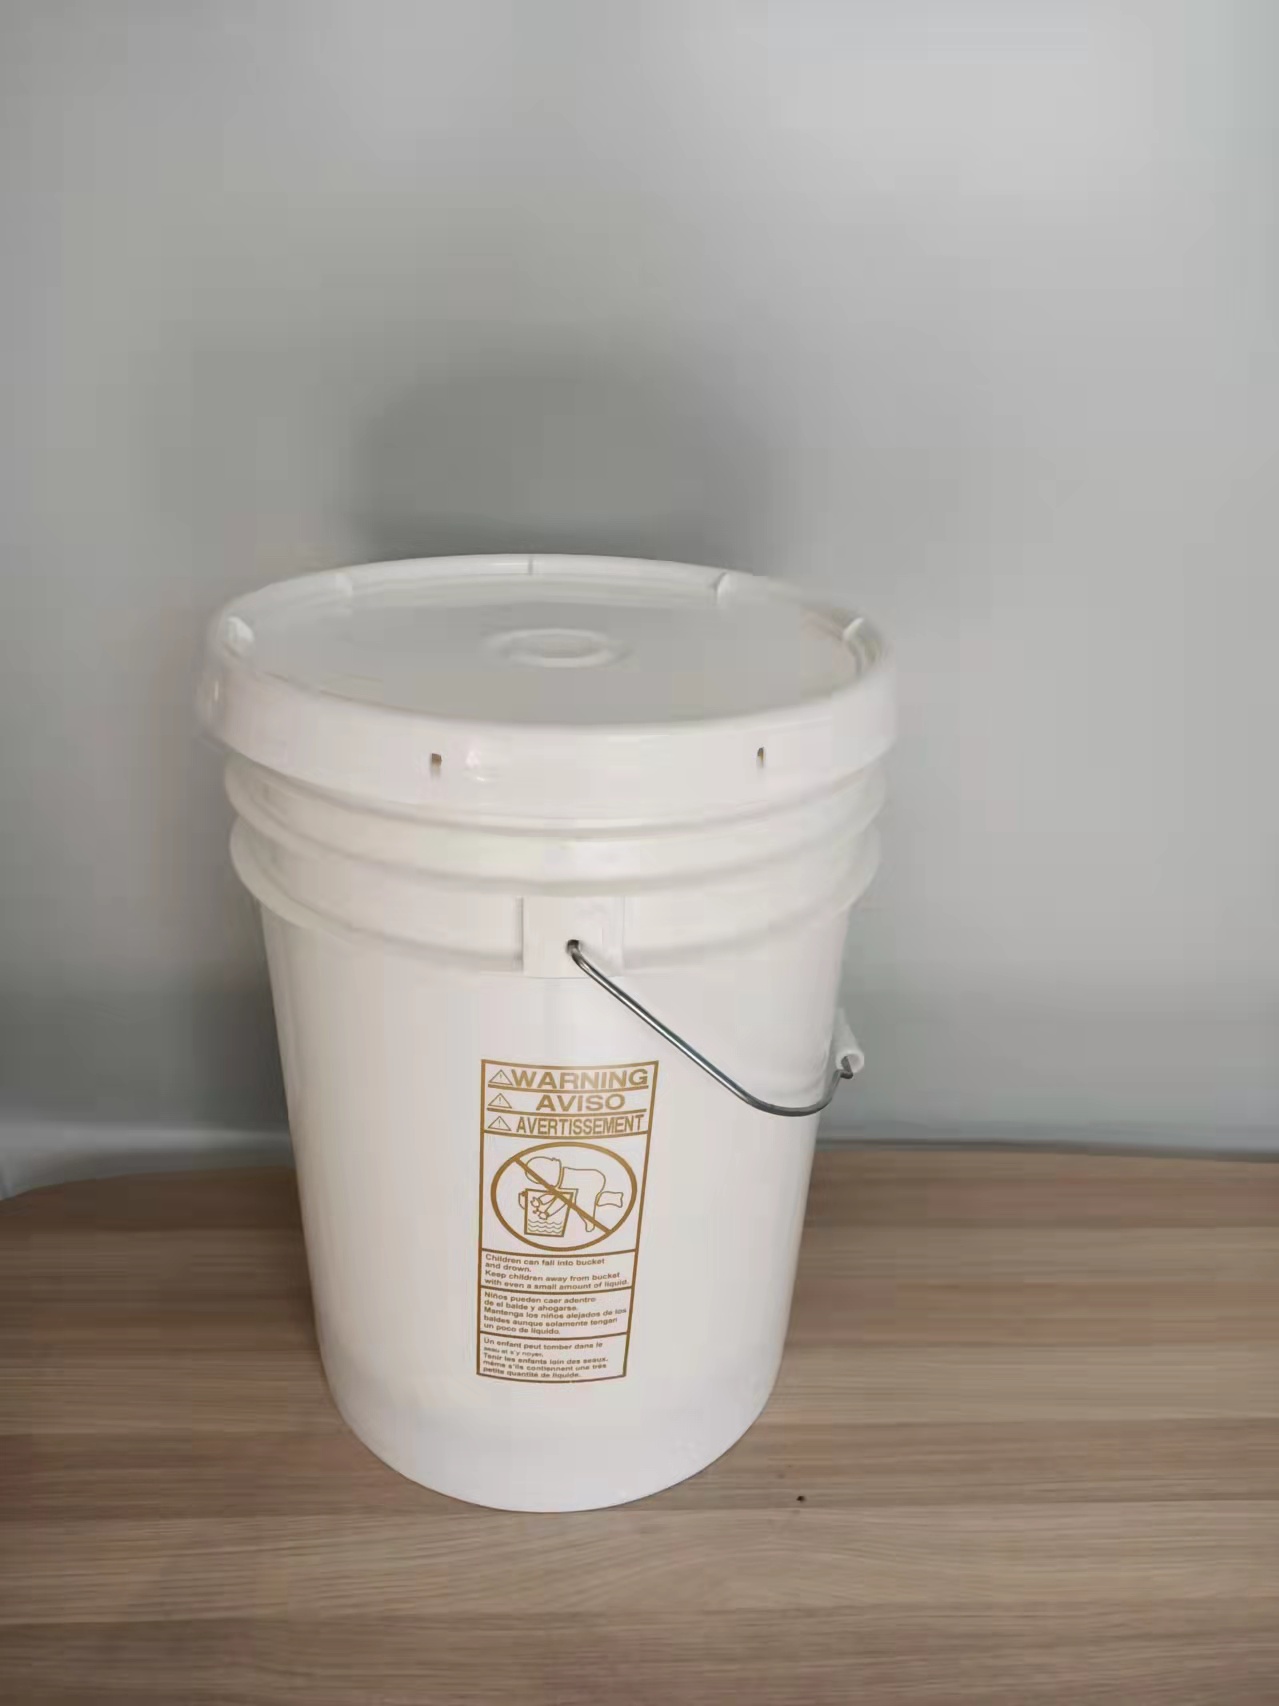 常州塑料化工桶厂家销售塑料化工桶塑料圆形桶椭圆形塑料桶方形塑料桶规格齐全支持开模生产